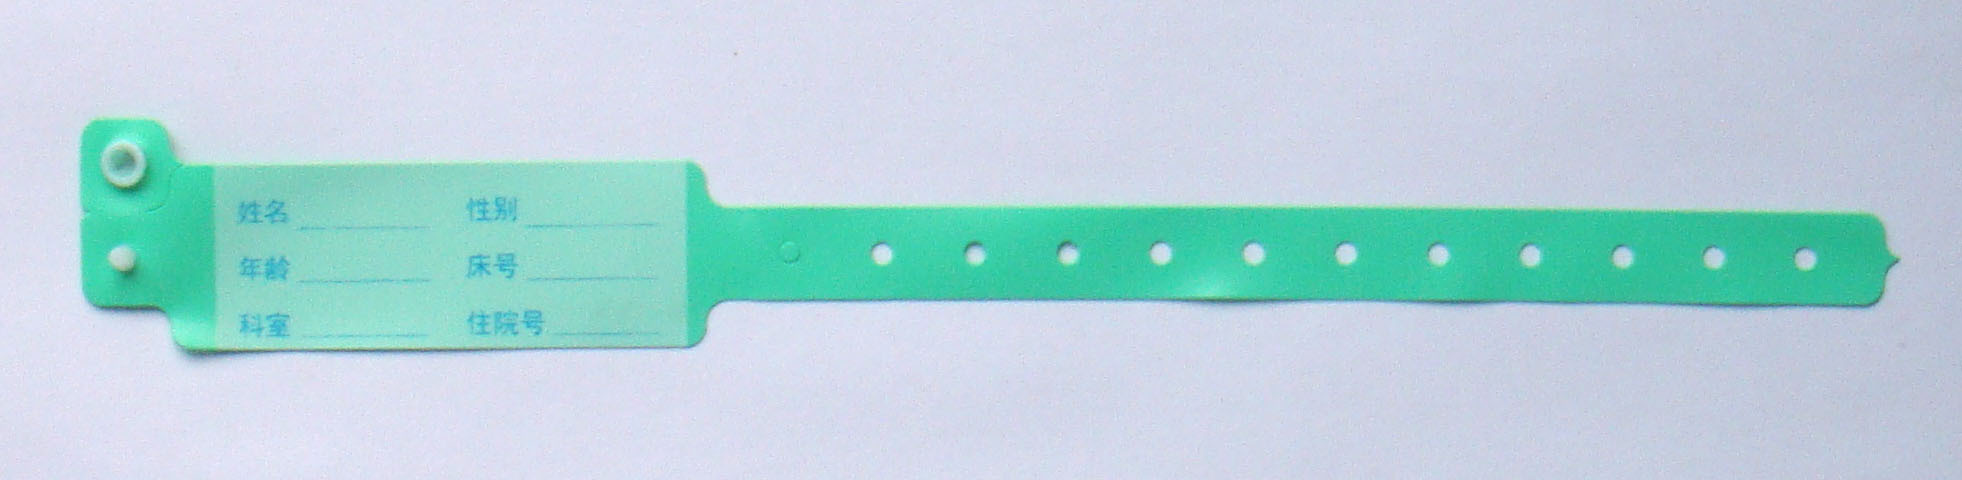 Grees-Light Green-Adult Идентификация браслетов